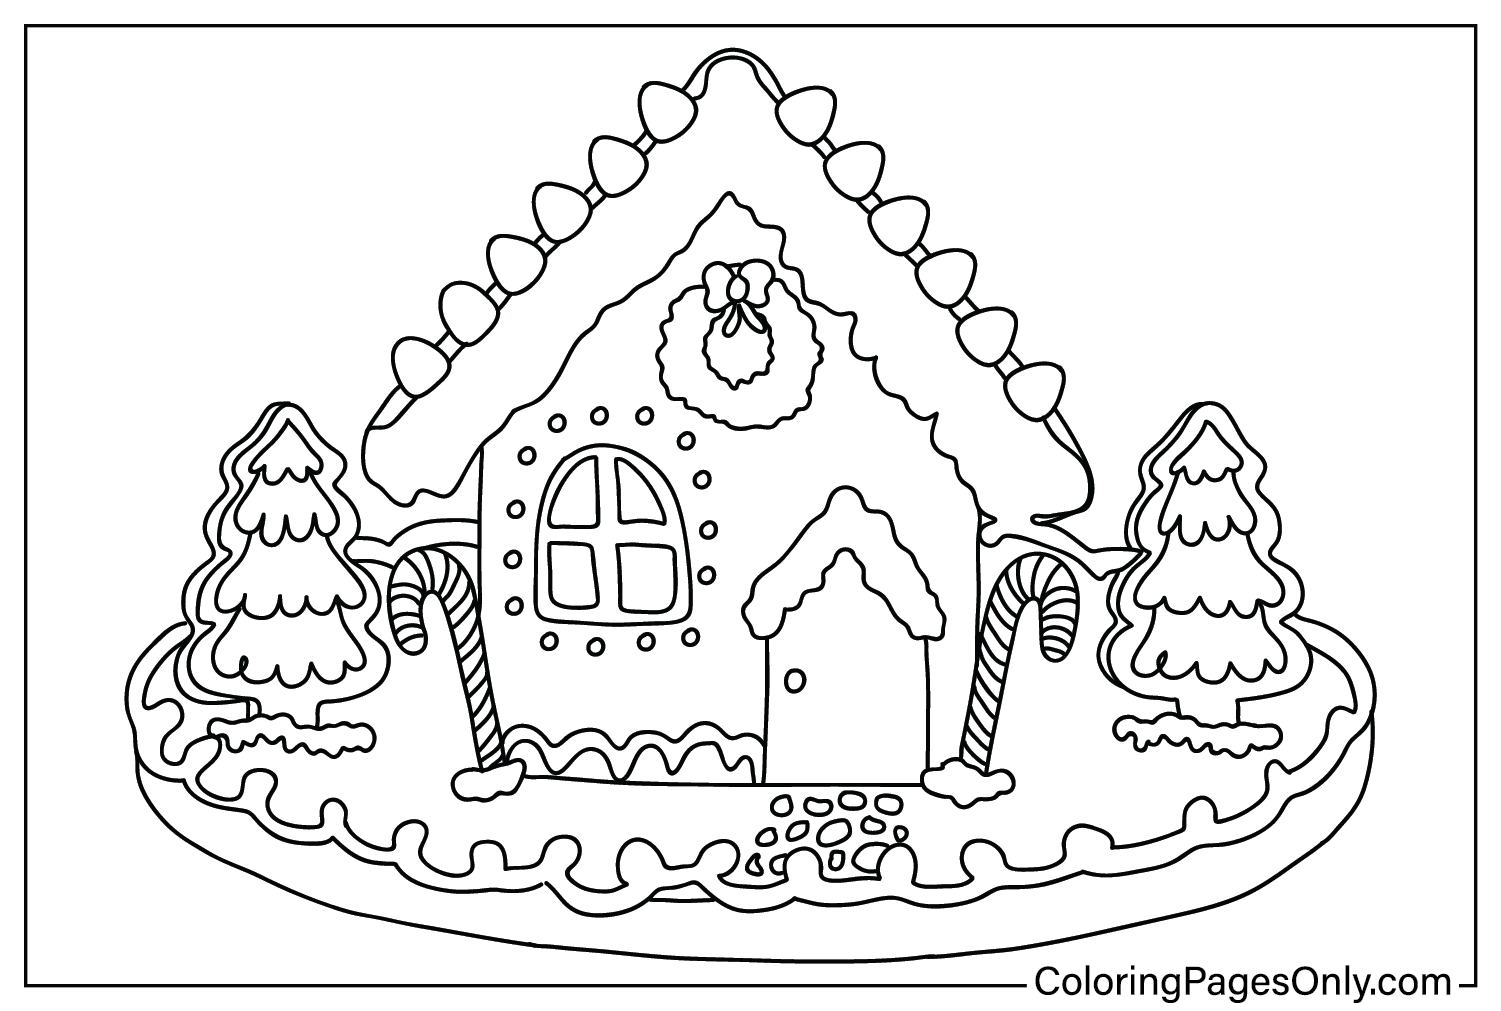 Página para colorir da Gingerbread House para impressão gratuita da Gingerbread House